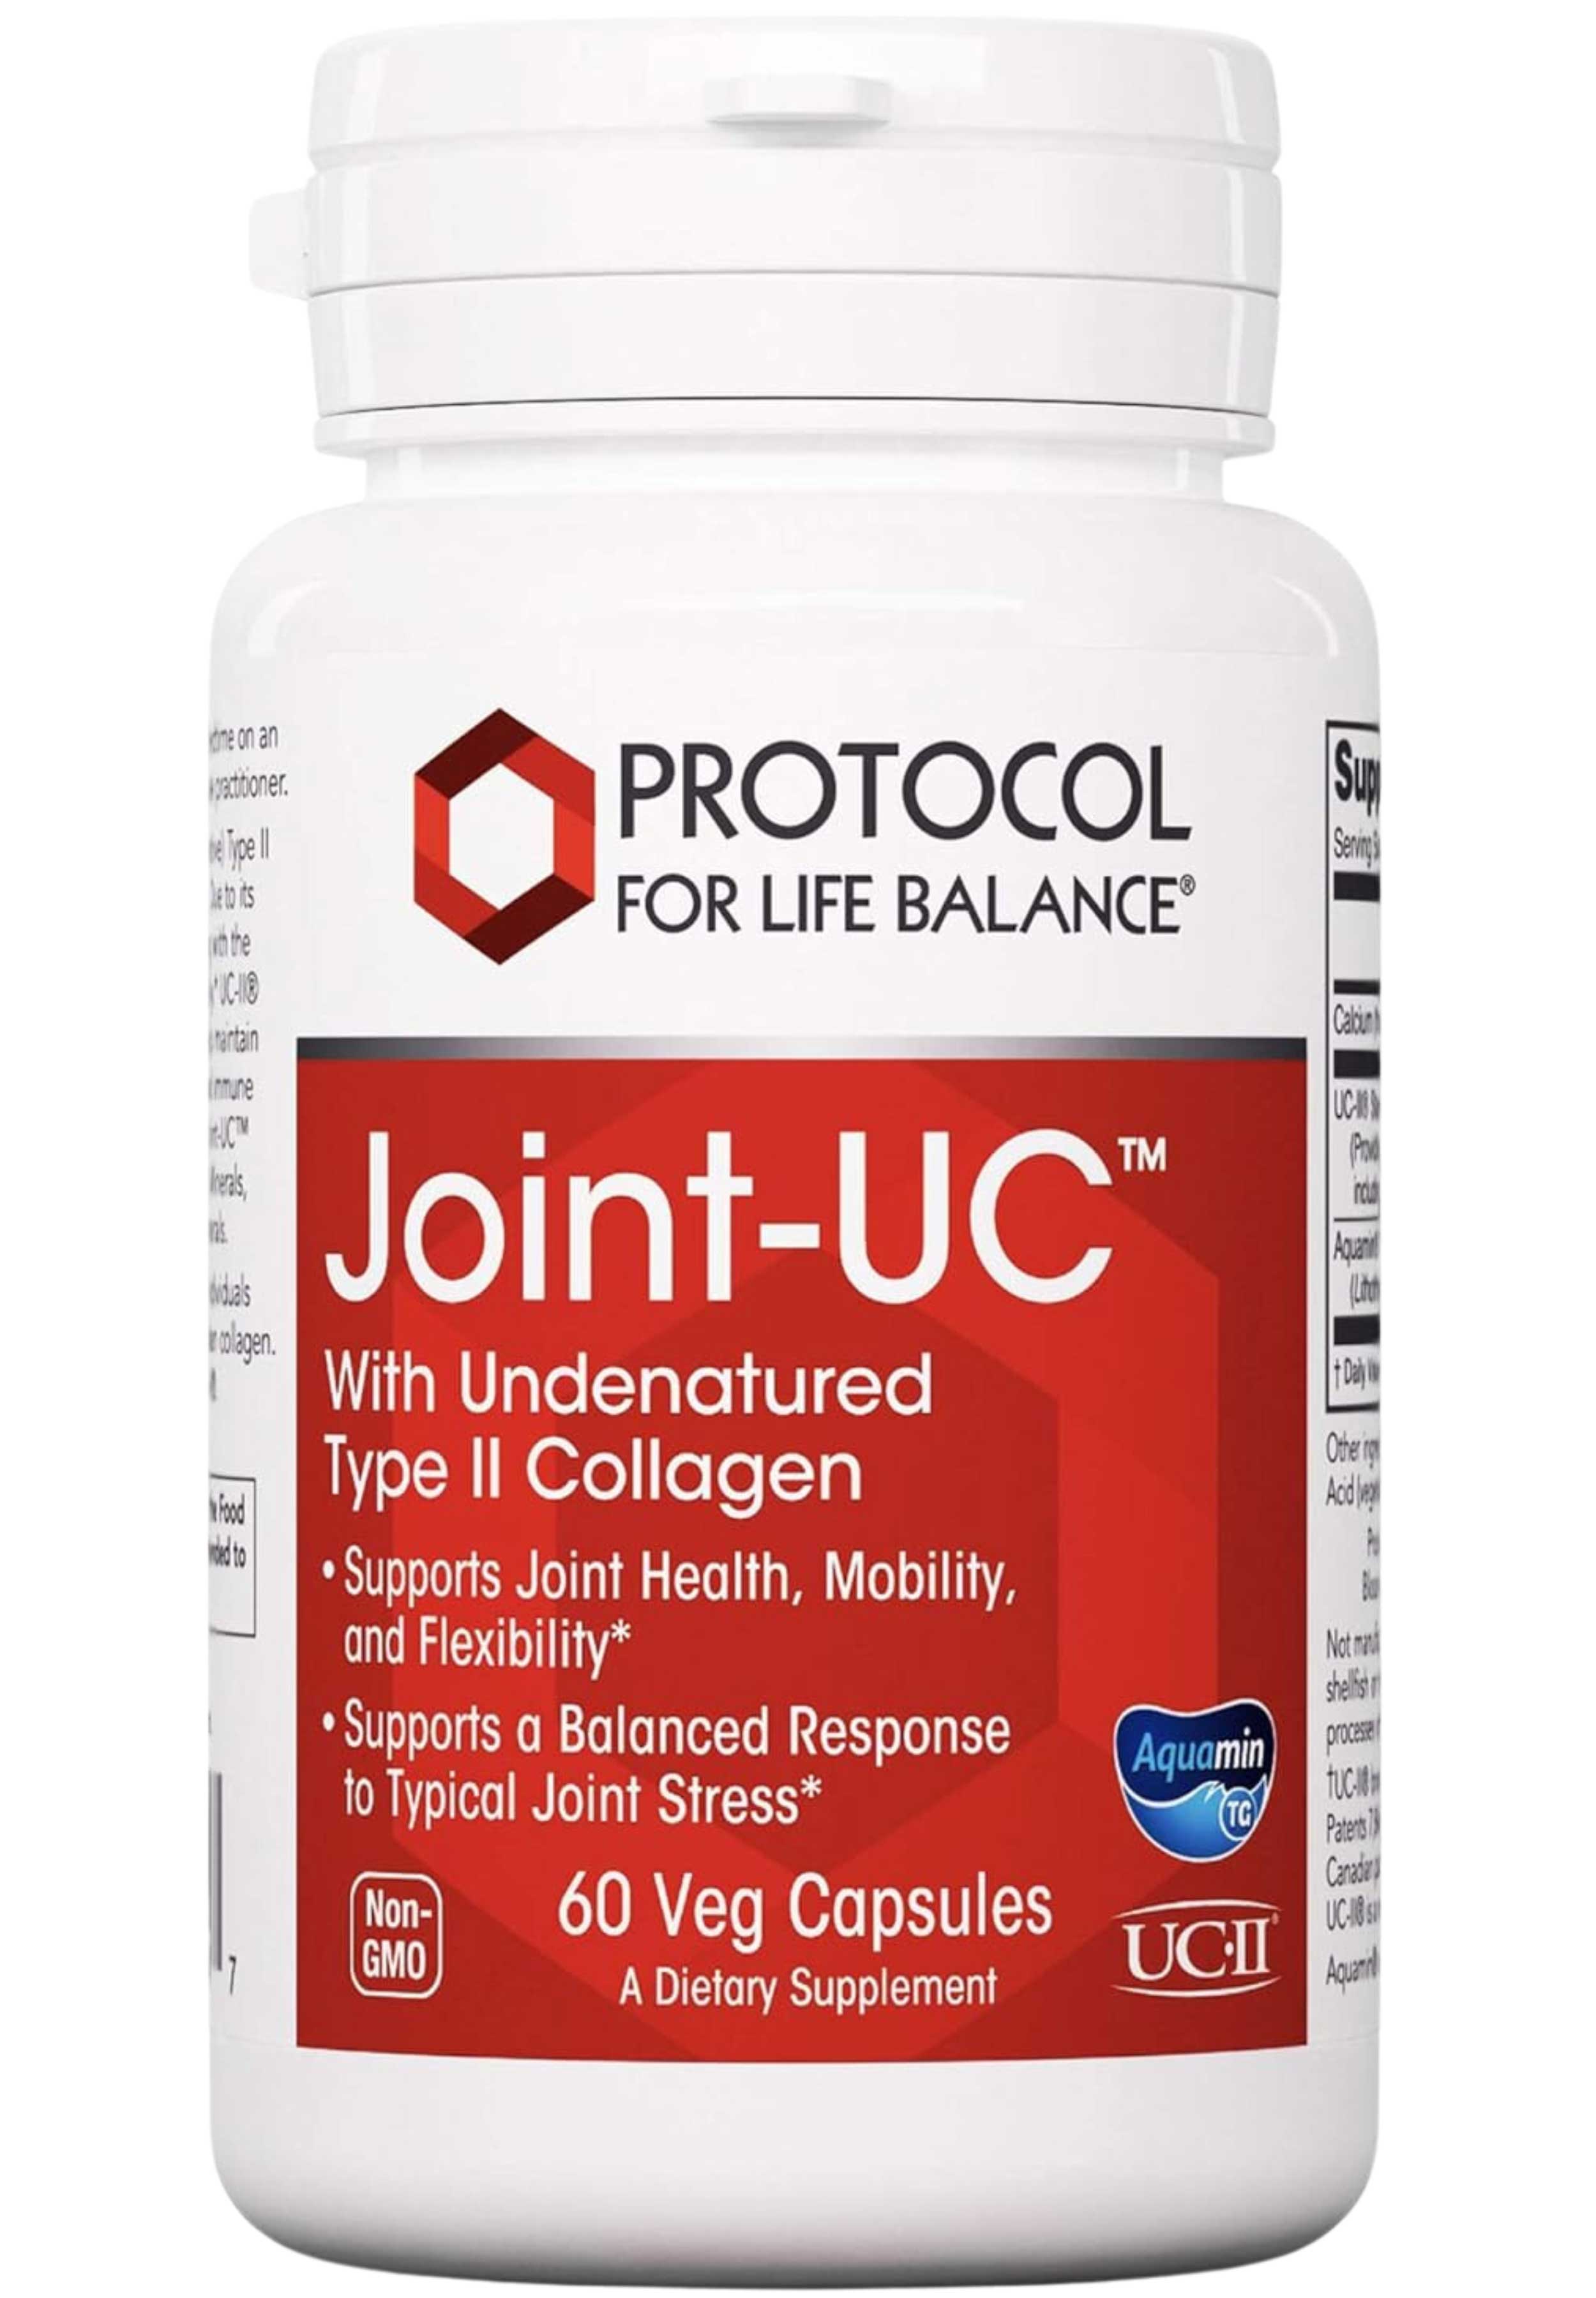 Protocol for Life Balance Joint-UC